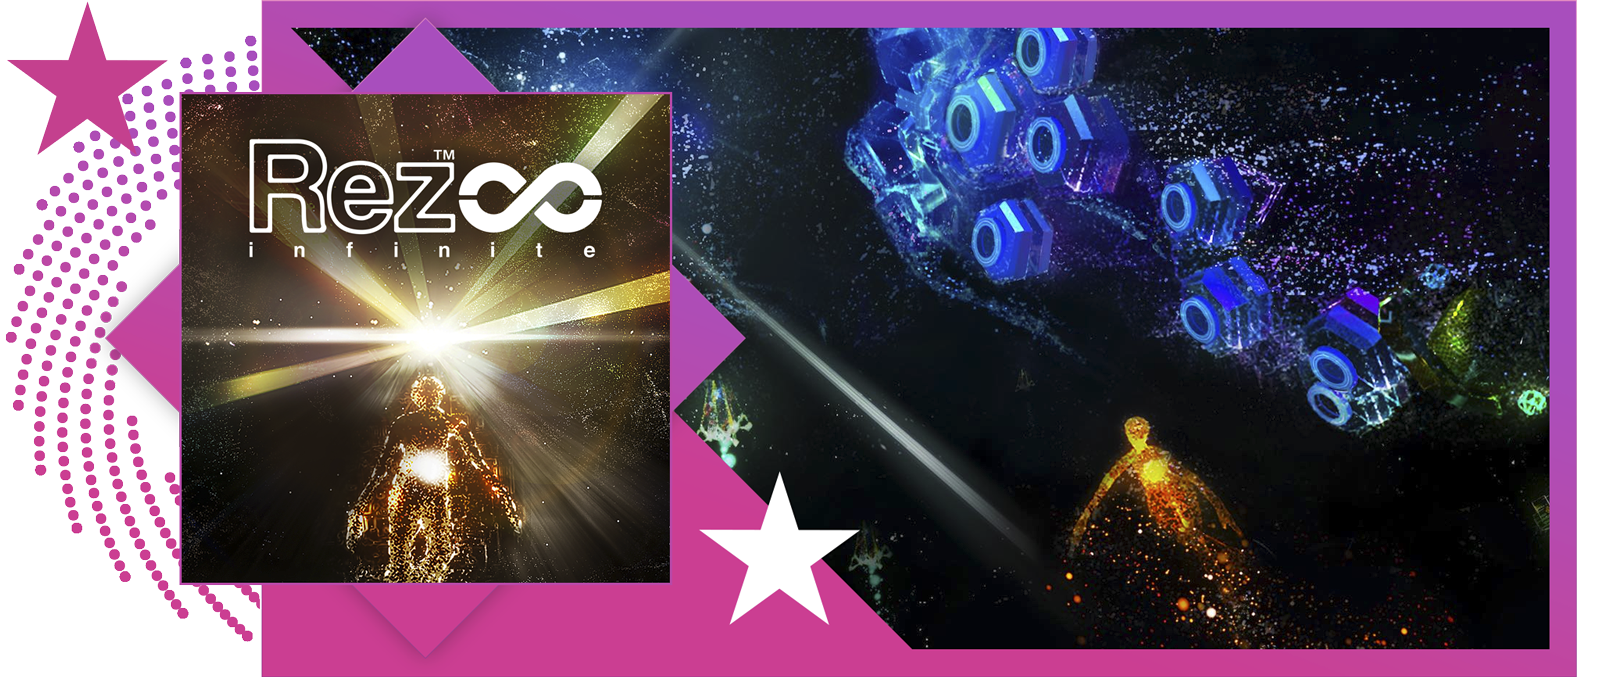 صورة رمزية لأفضل ألعاب الإيقاع الموسيقي تعرض صورة فنية وتجربة لعب من Rez Infinite.